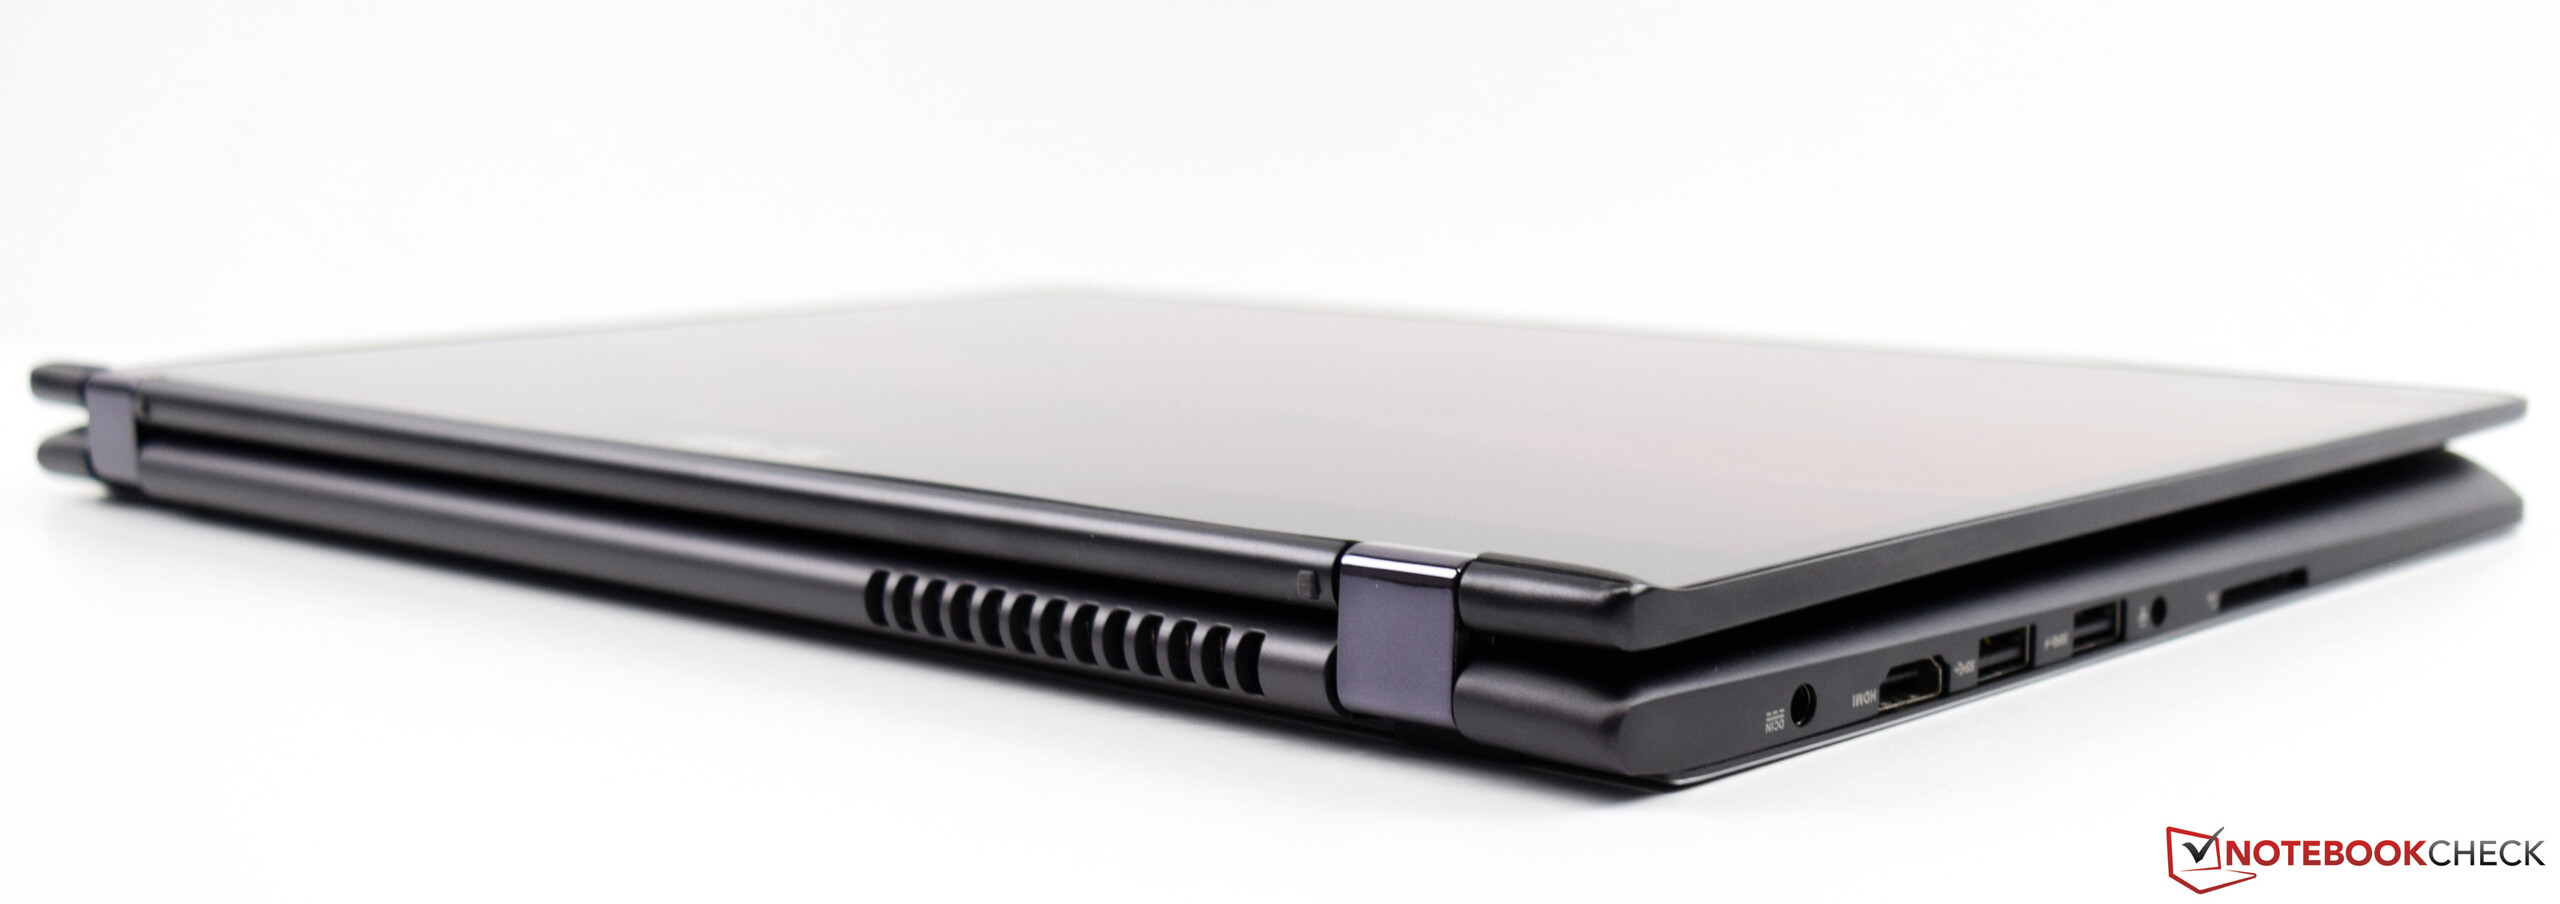 Asus ZenBook Flip 15 (i7-8550U, GTX 1050, 4K, SSD, HDD) Convertible ...